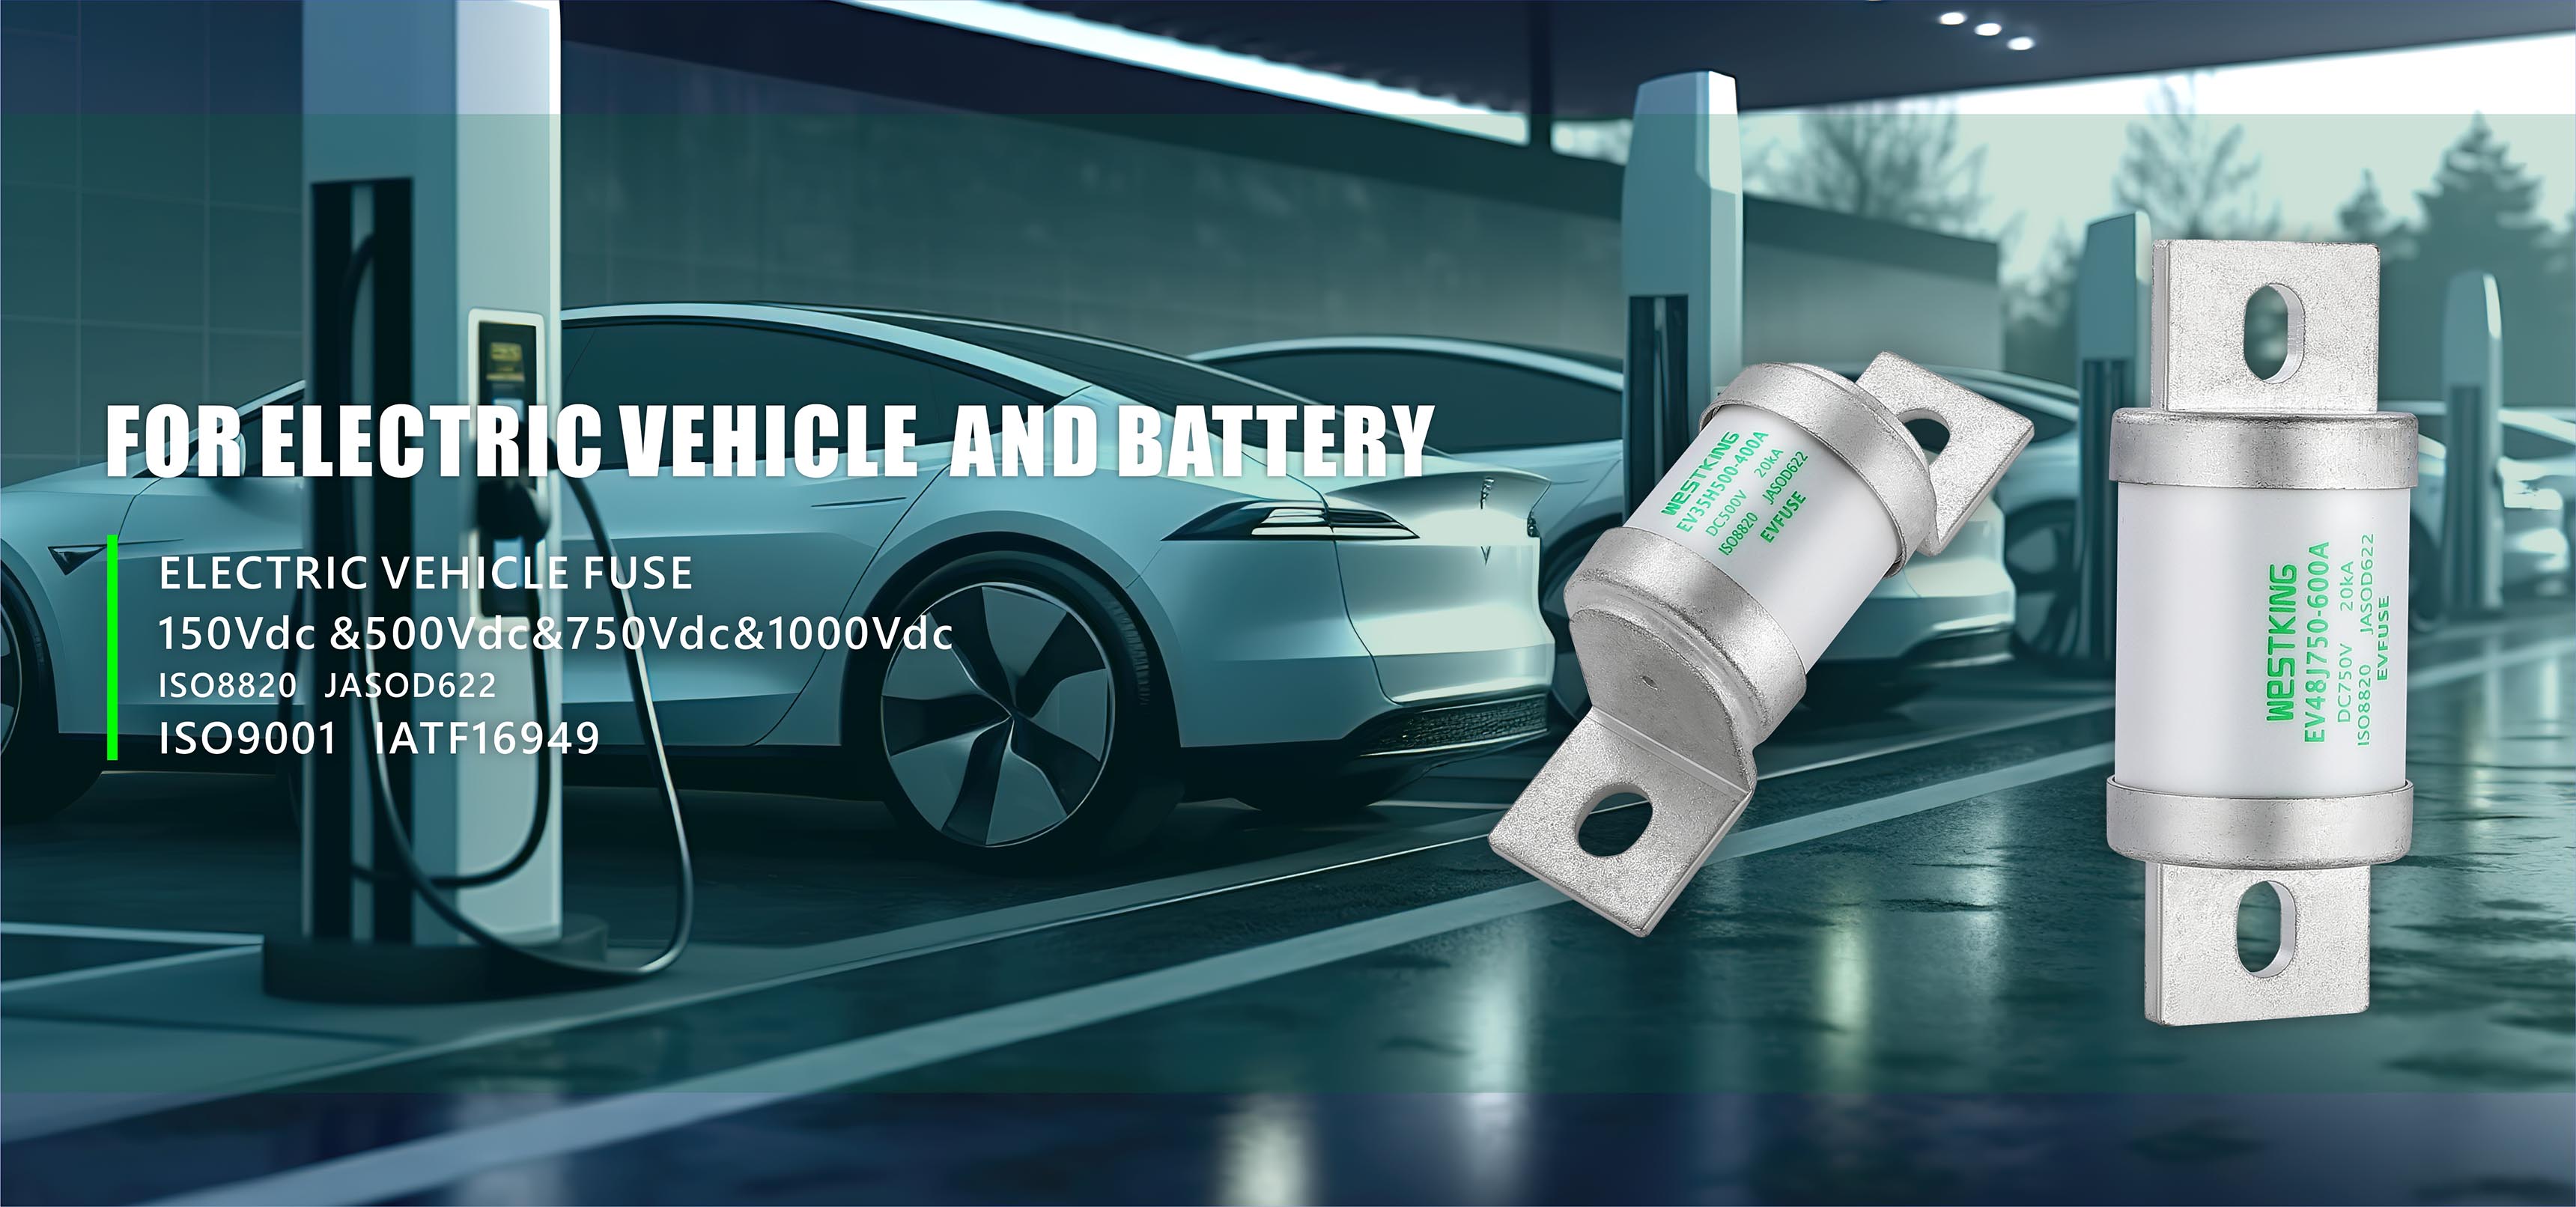 EV FUSE за електрически превозни средства и фабрика за батерии